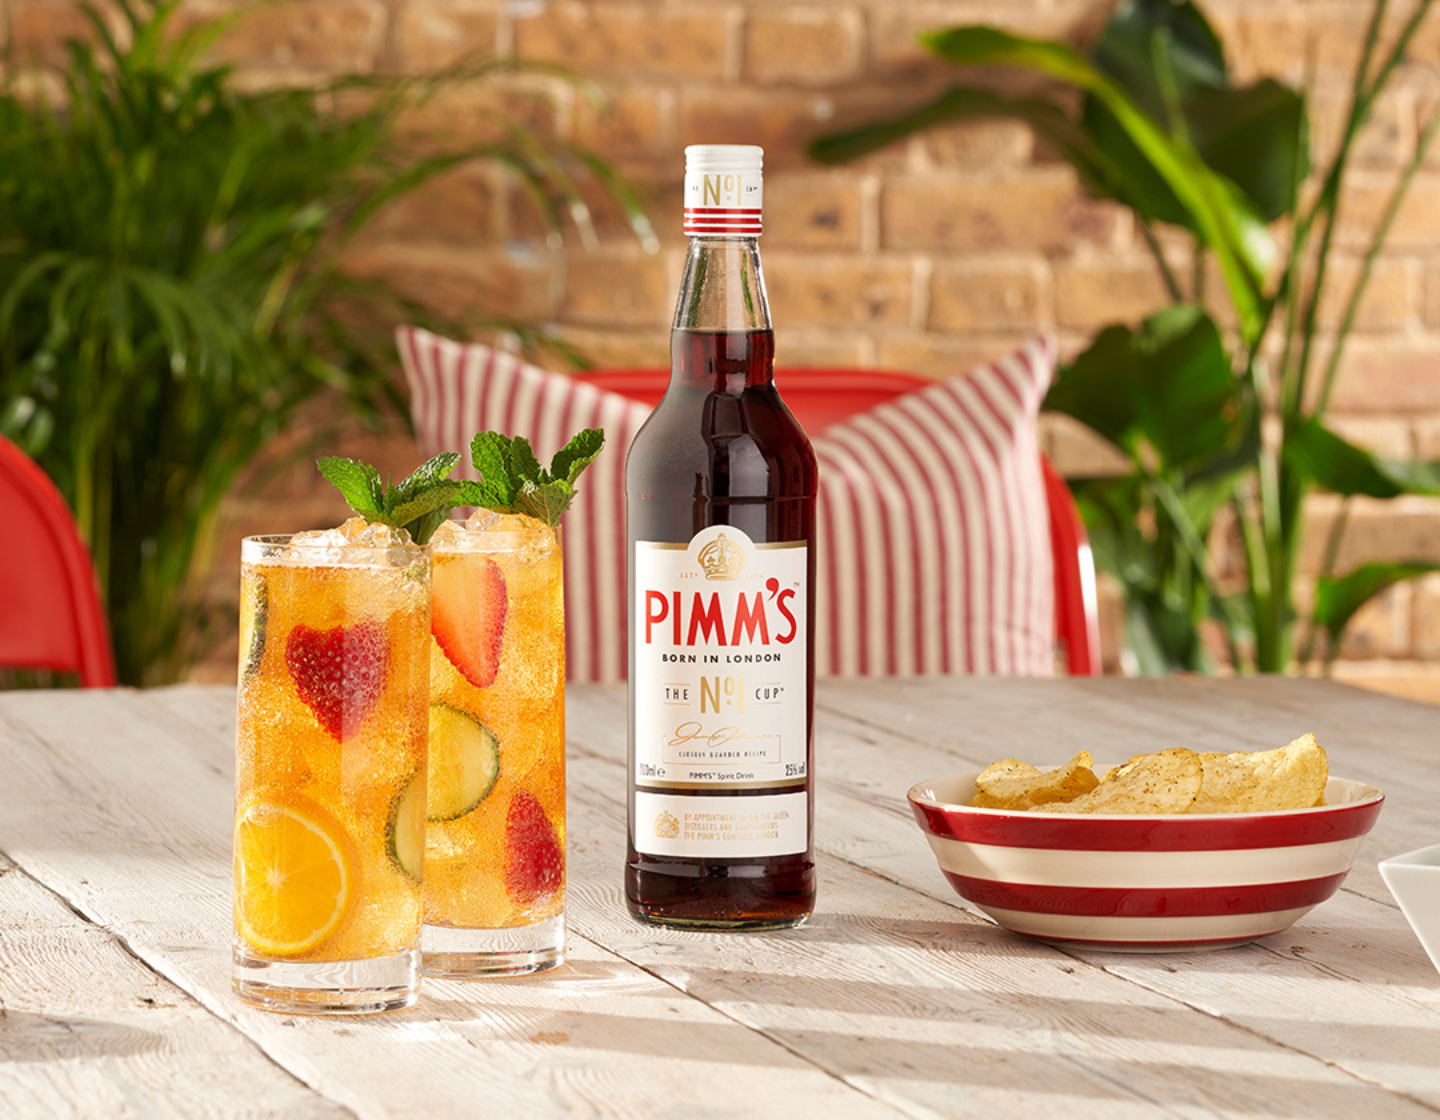 Botella de Pimm's sobre la mesa junto a dos vasos llenos de cócteles y un plato de patatas fritas 